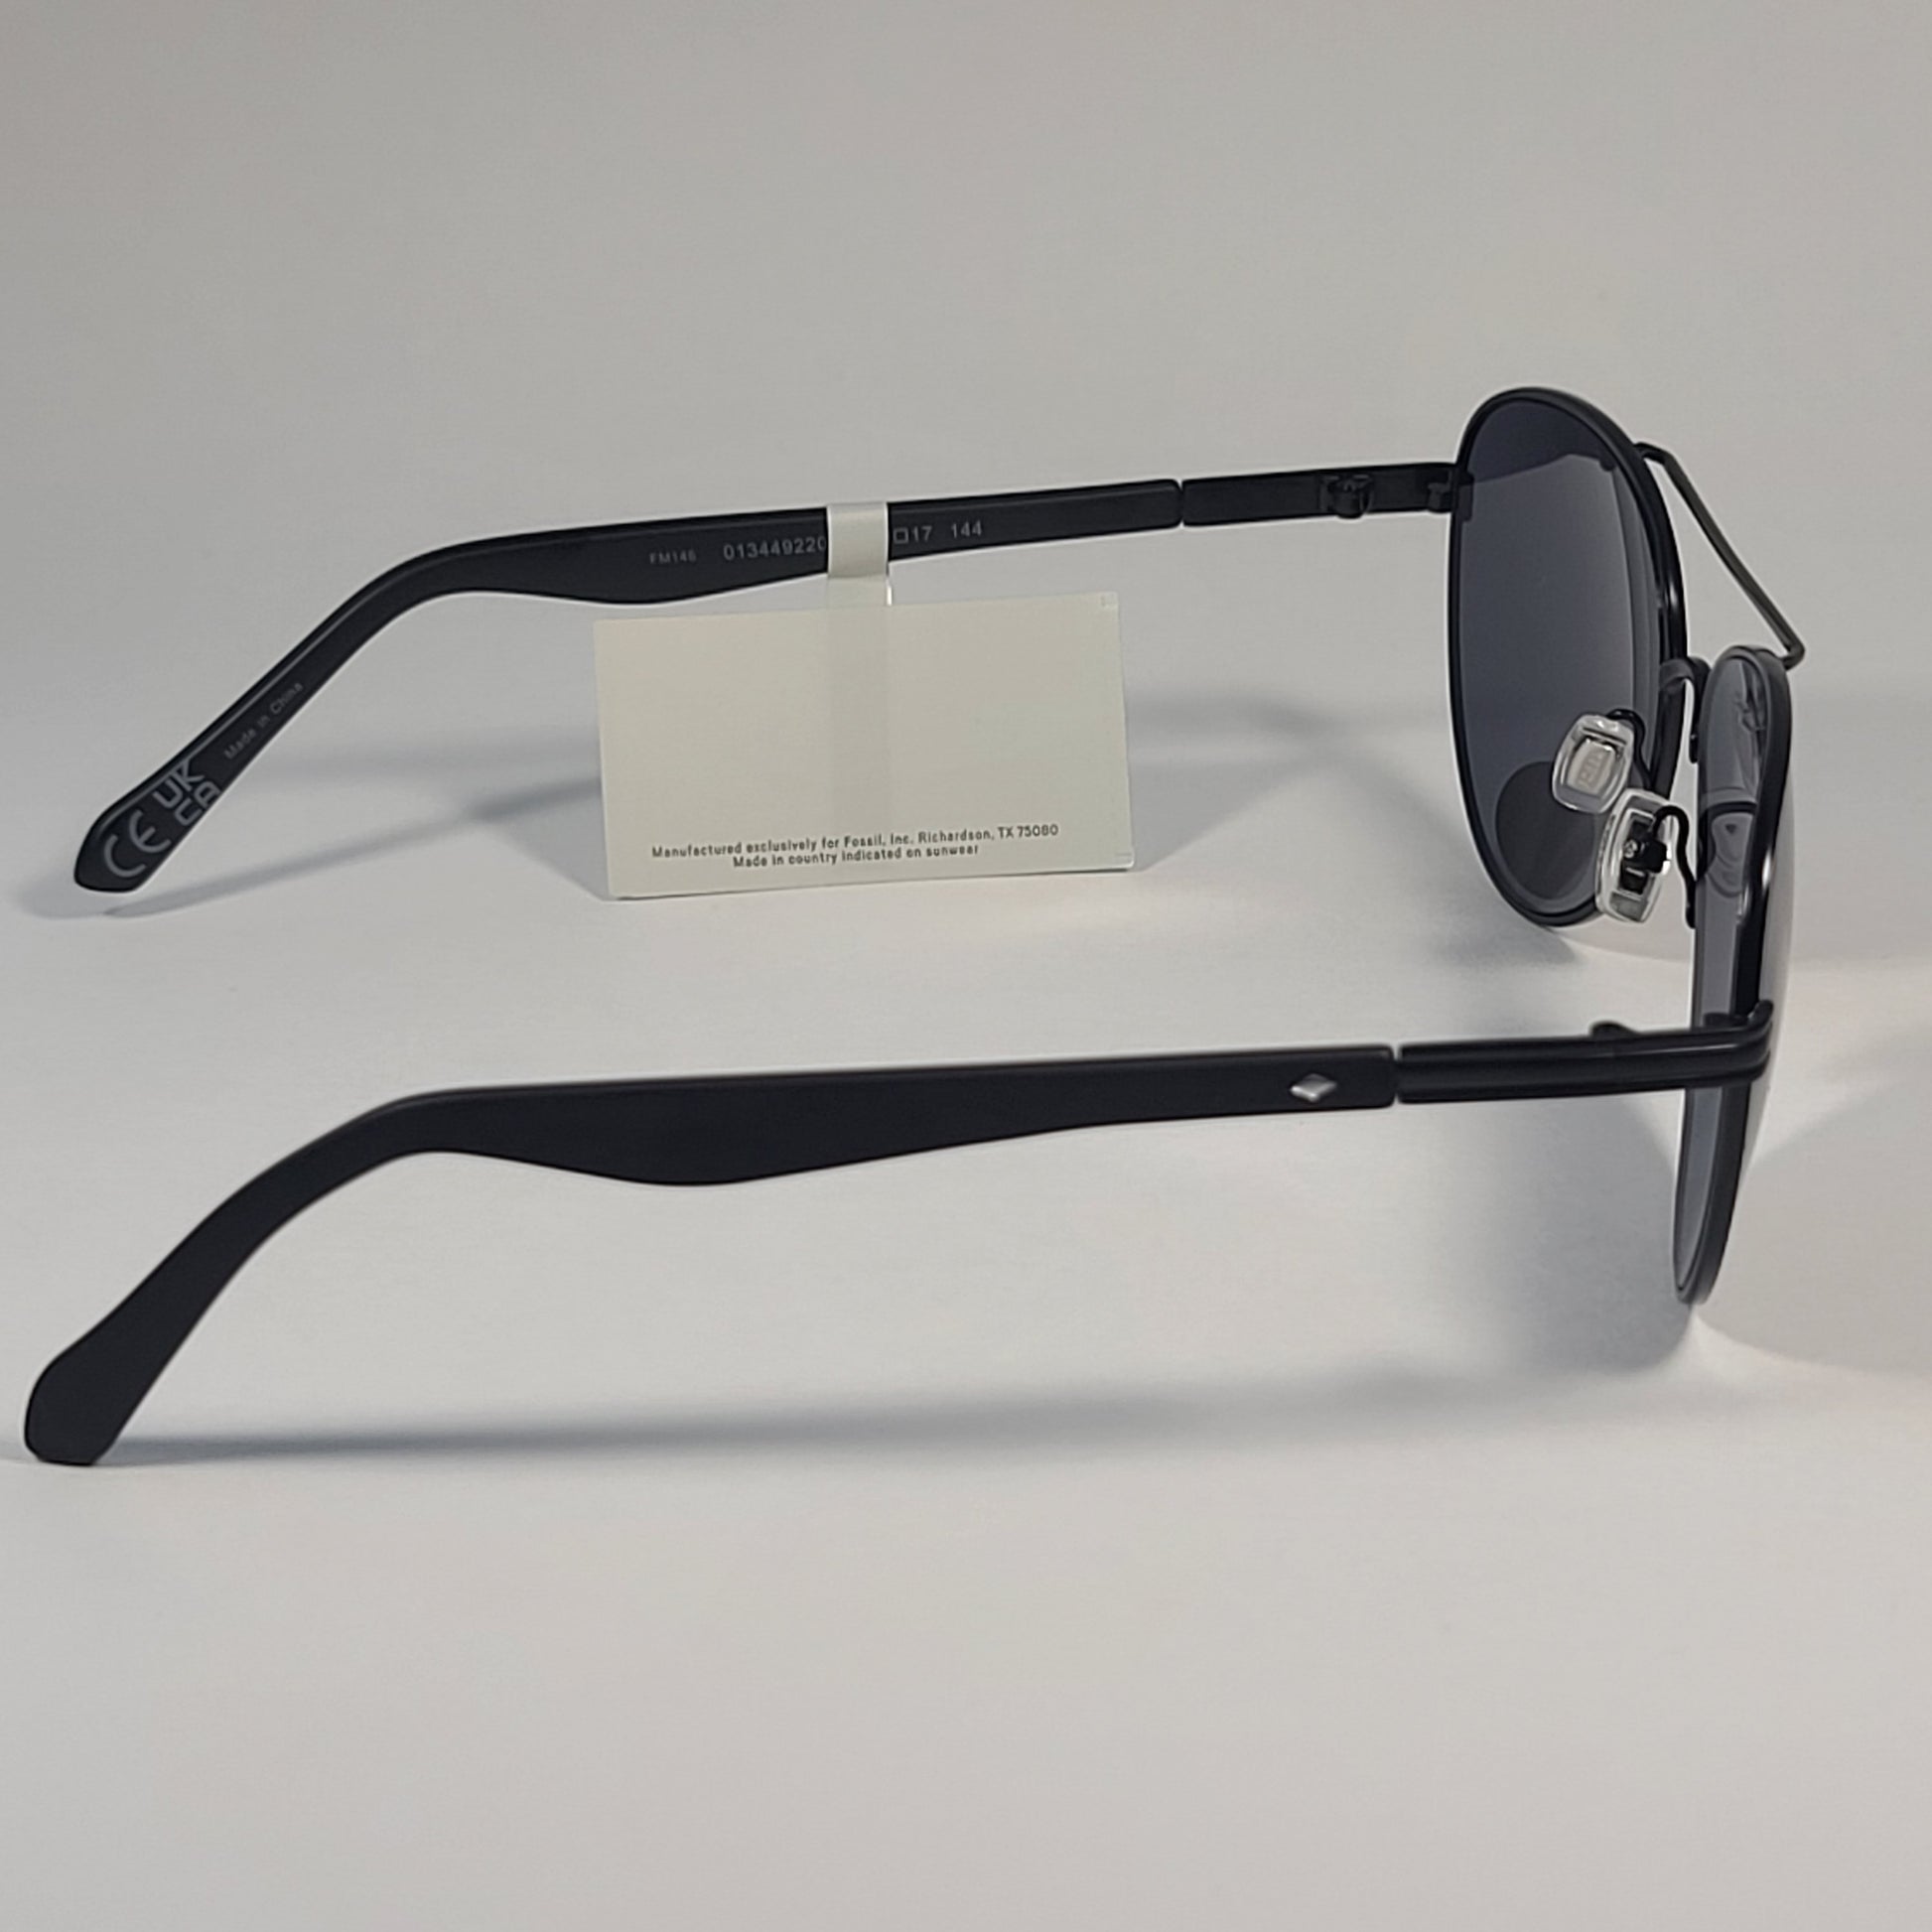 Fossil FM146 Men’s Aviator Sunglasses Matte Black Frame Solid Gray Lens - Sunglasses